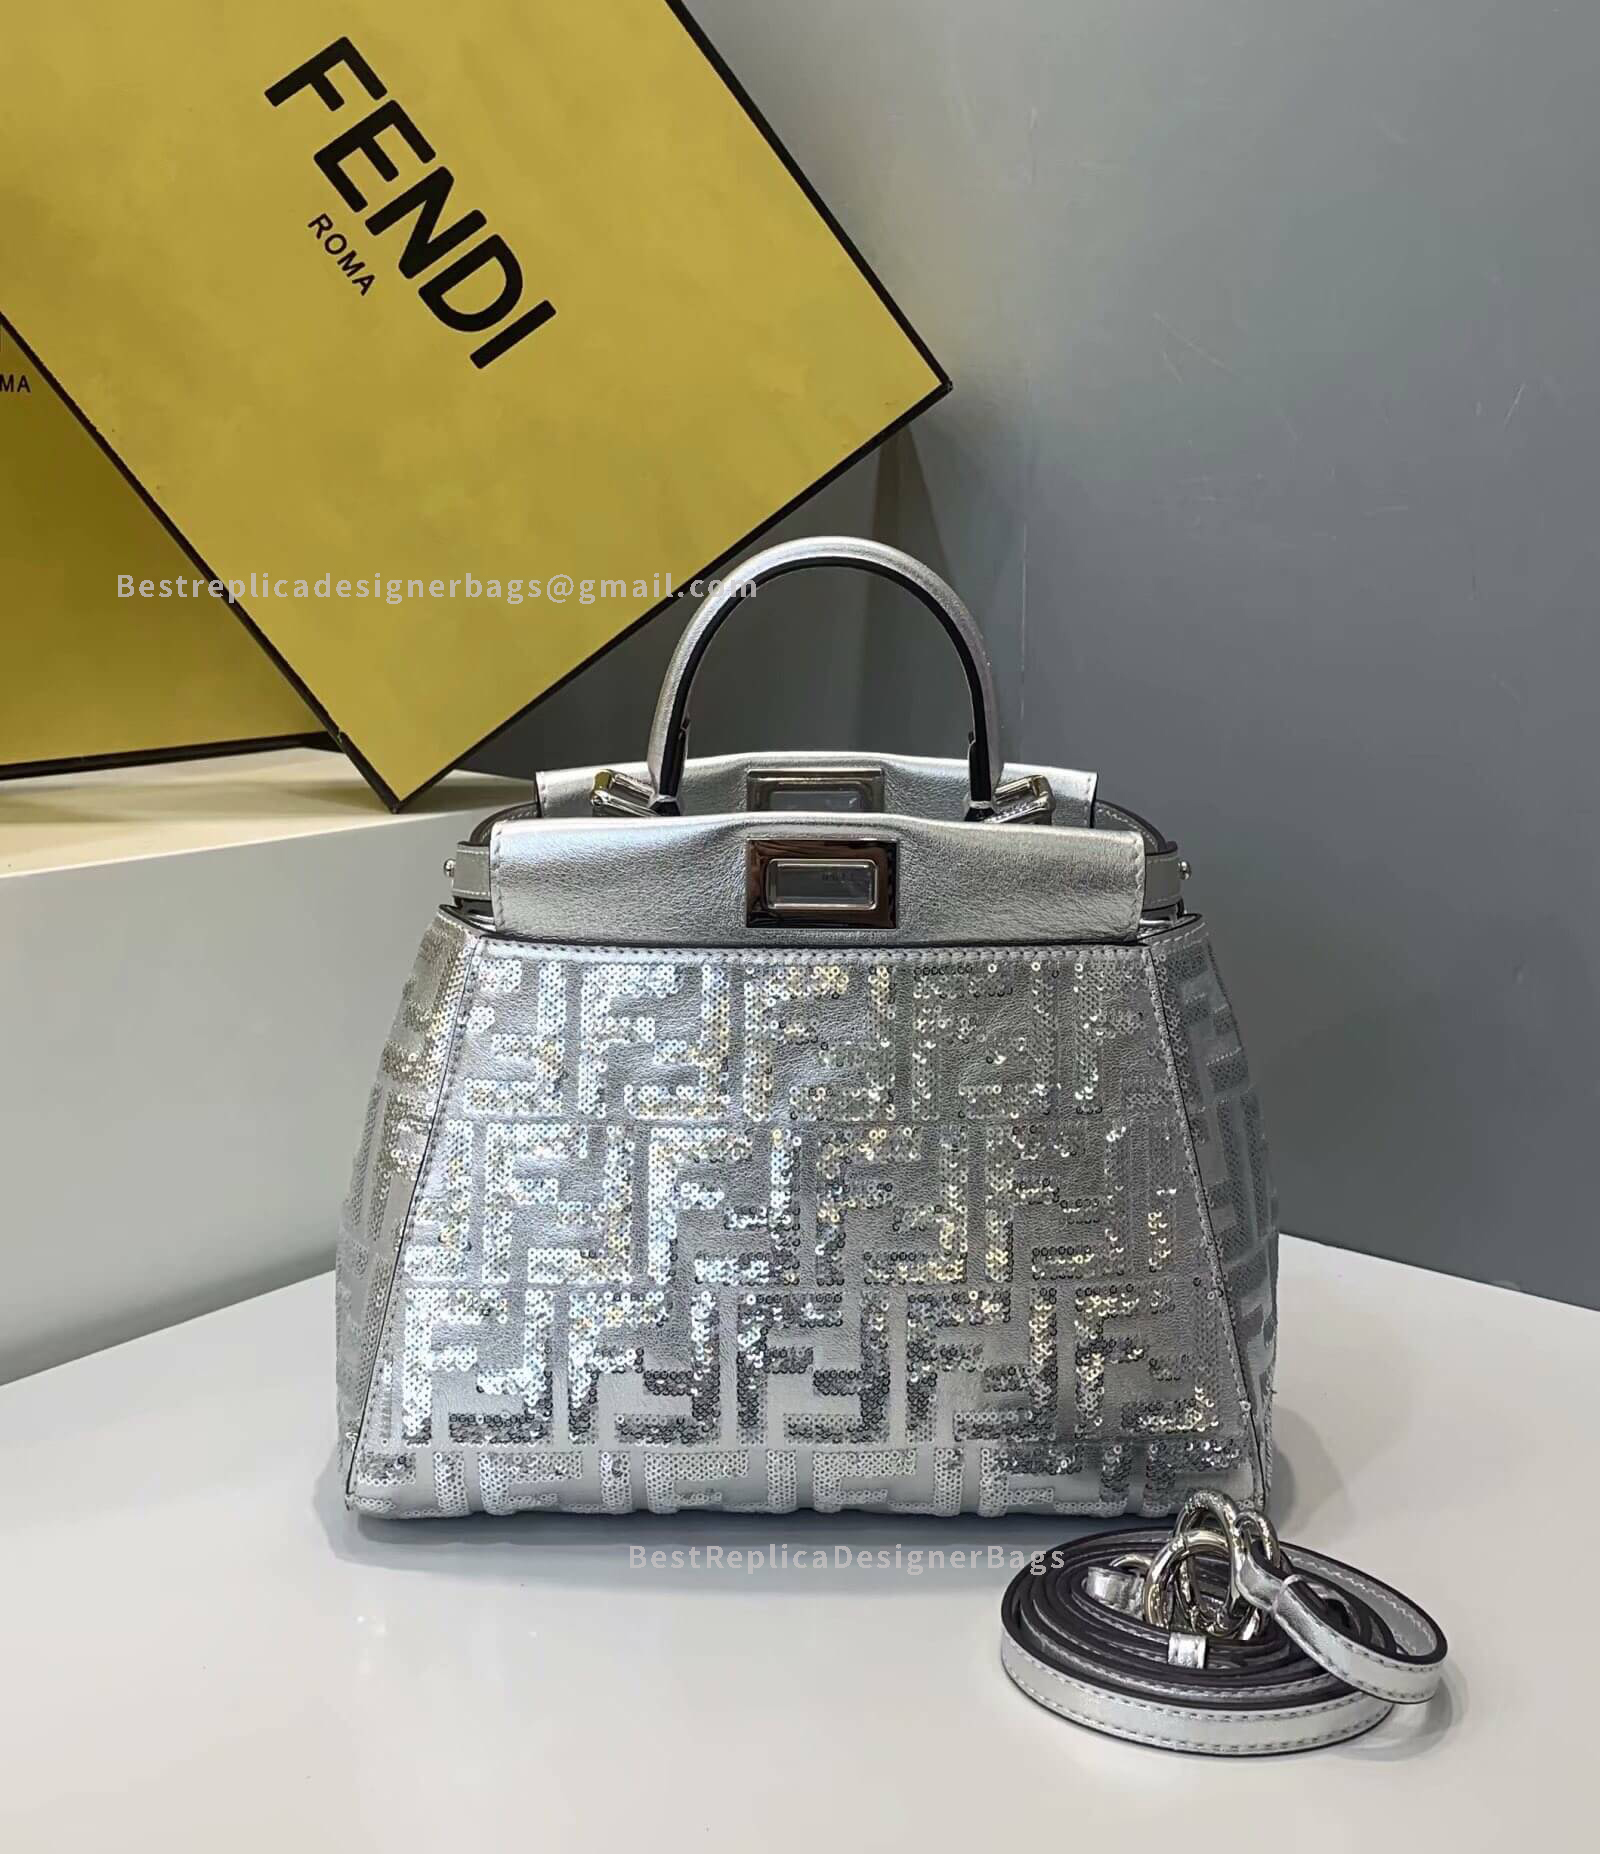 Fendi Peekaboo Iconic mini Silver Leather Bag 2120